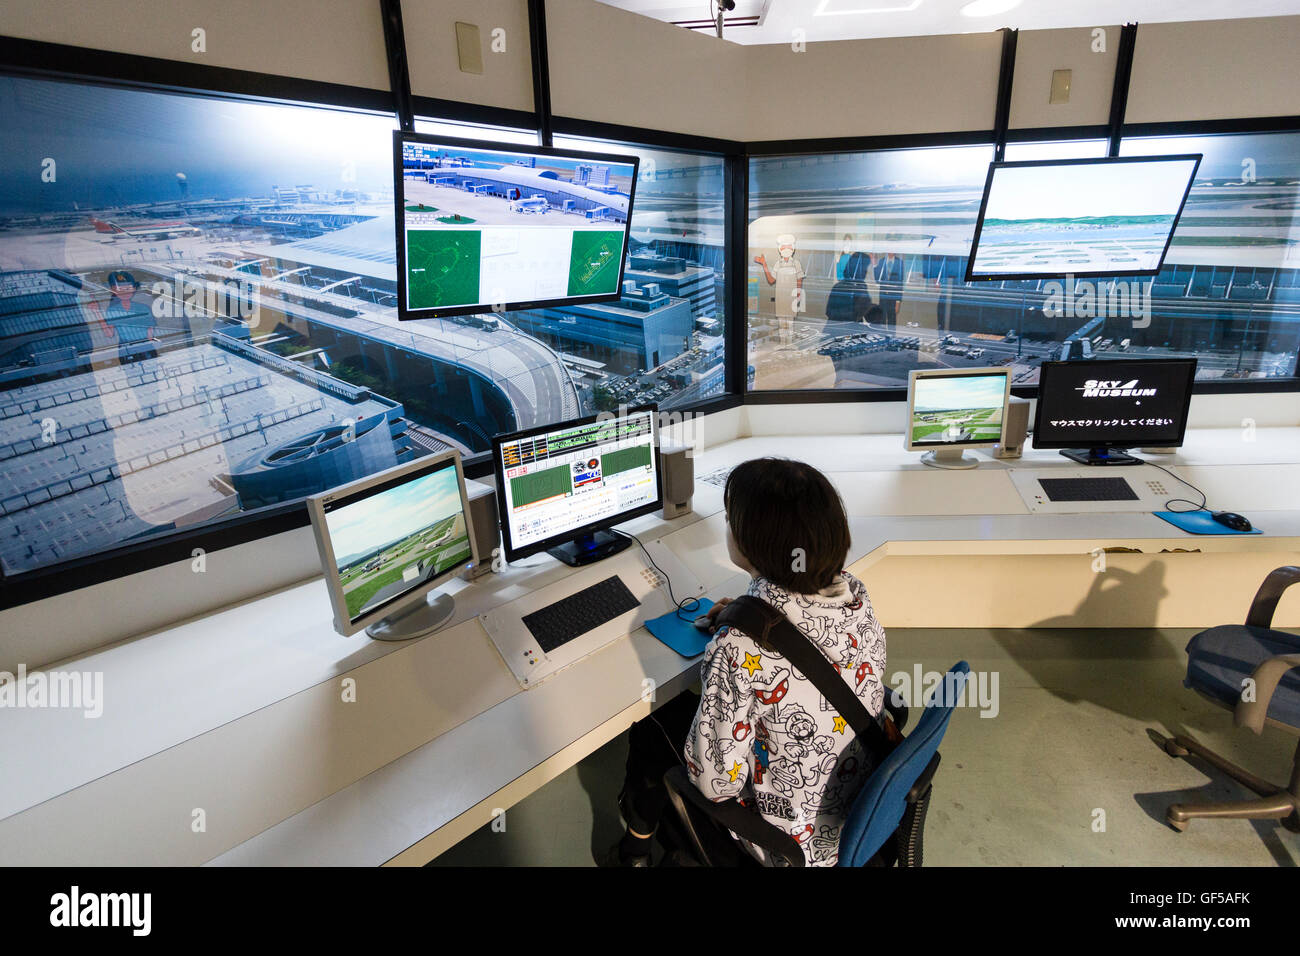 Le Japon, l'aéroport de Kansai, KIX. Musée du ciel, de l'intérieur. Caucasien enfant, garçon de 14 ans, assis à la circulation aérienne Contrôleur de vol simulateur. Banque D'Images